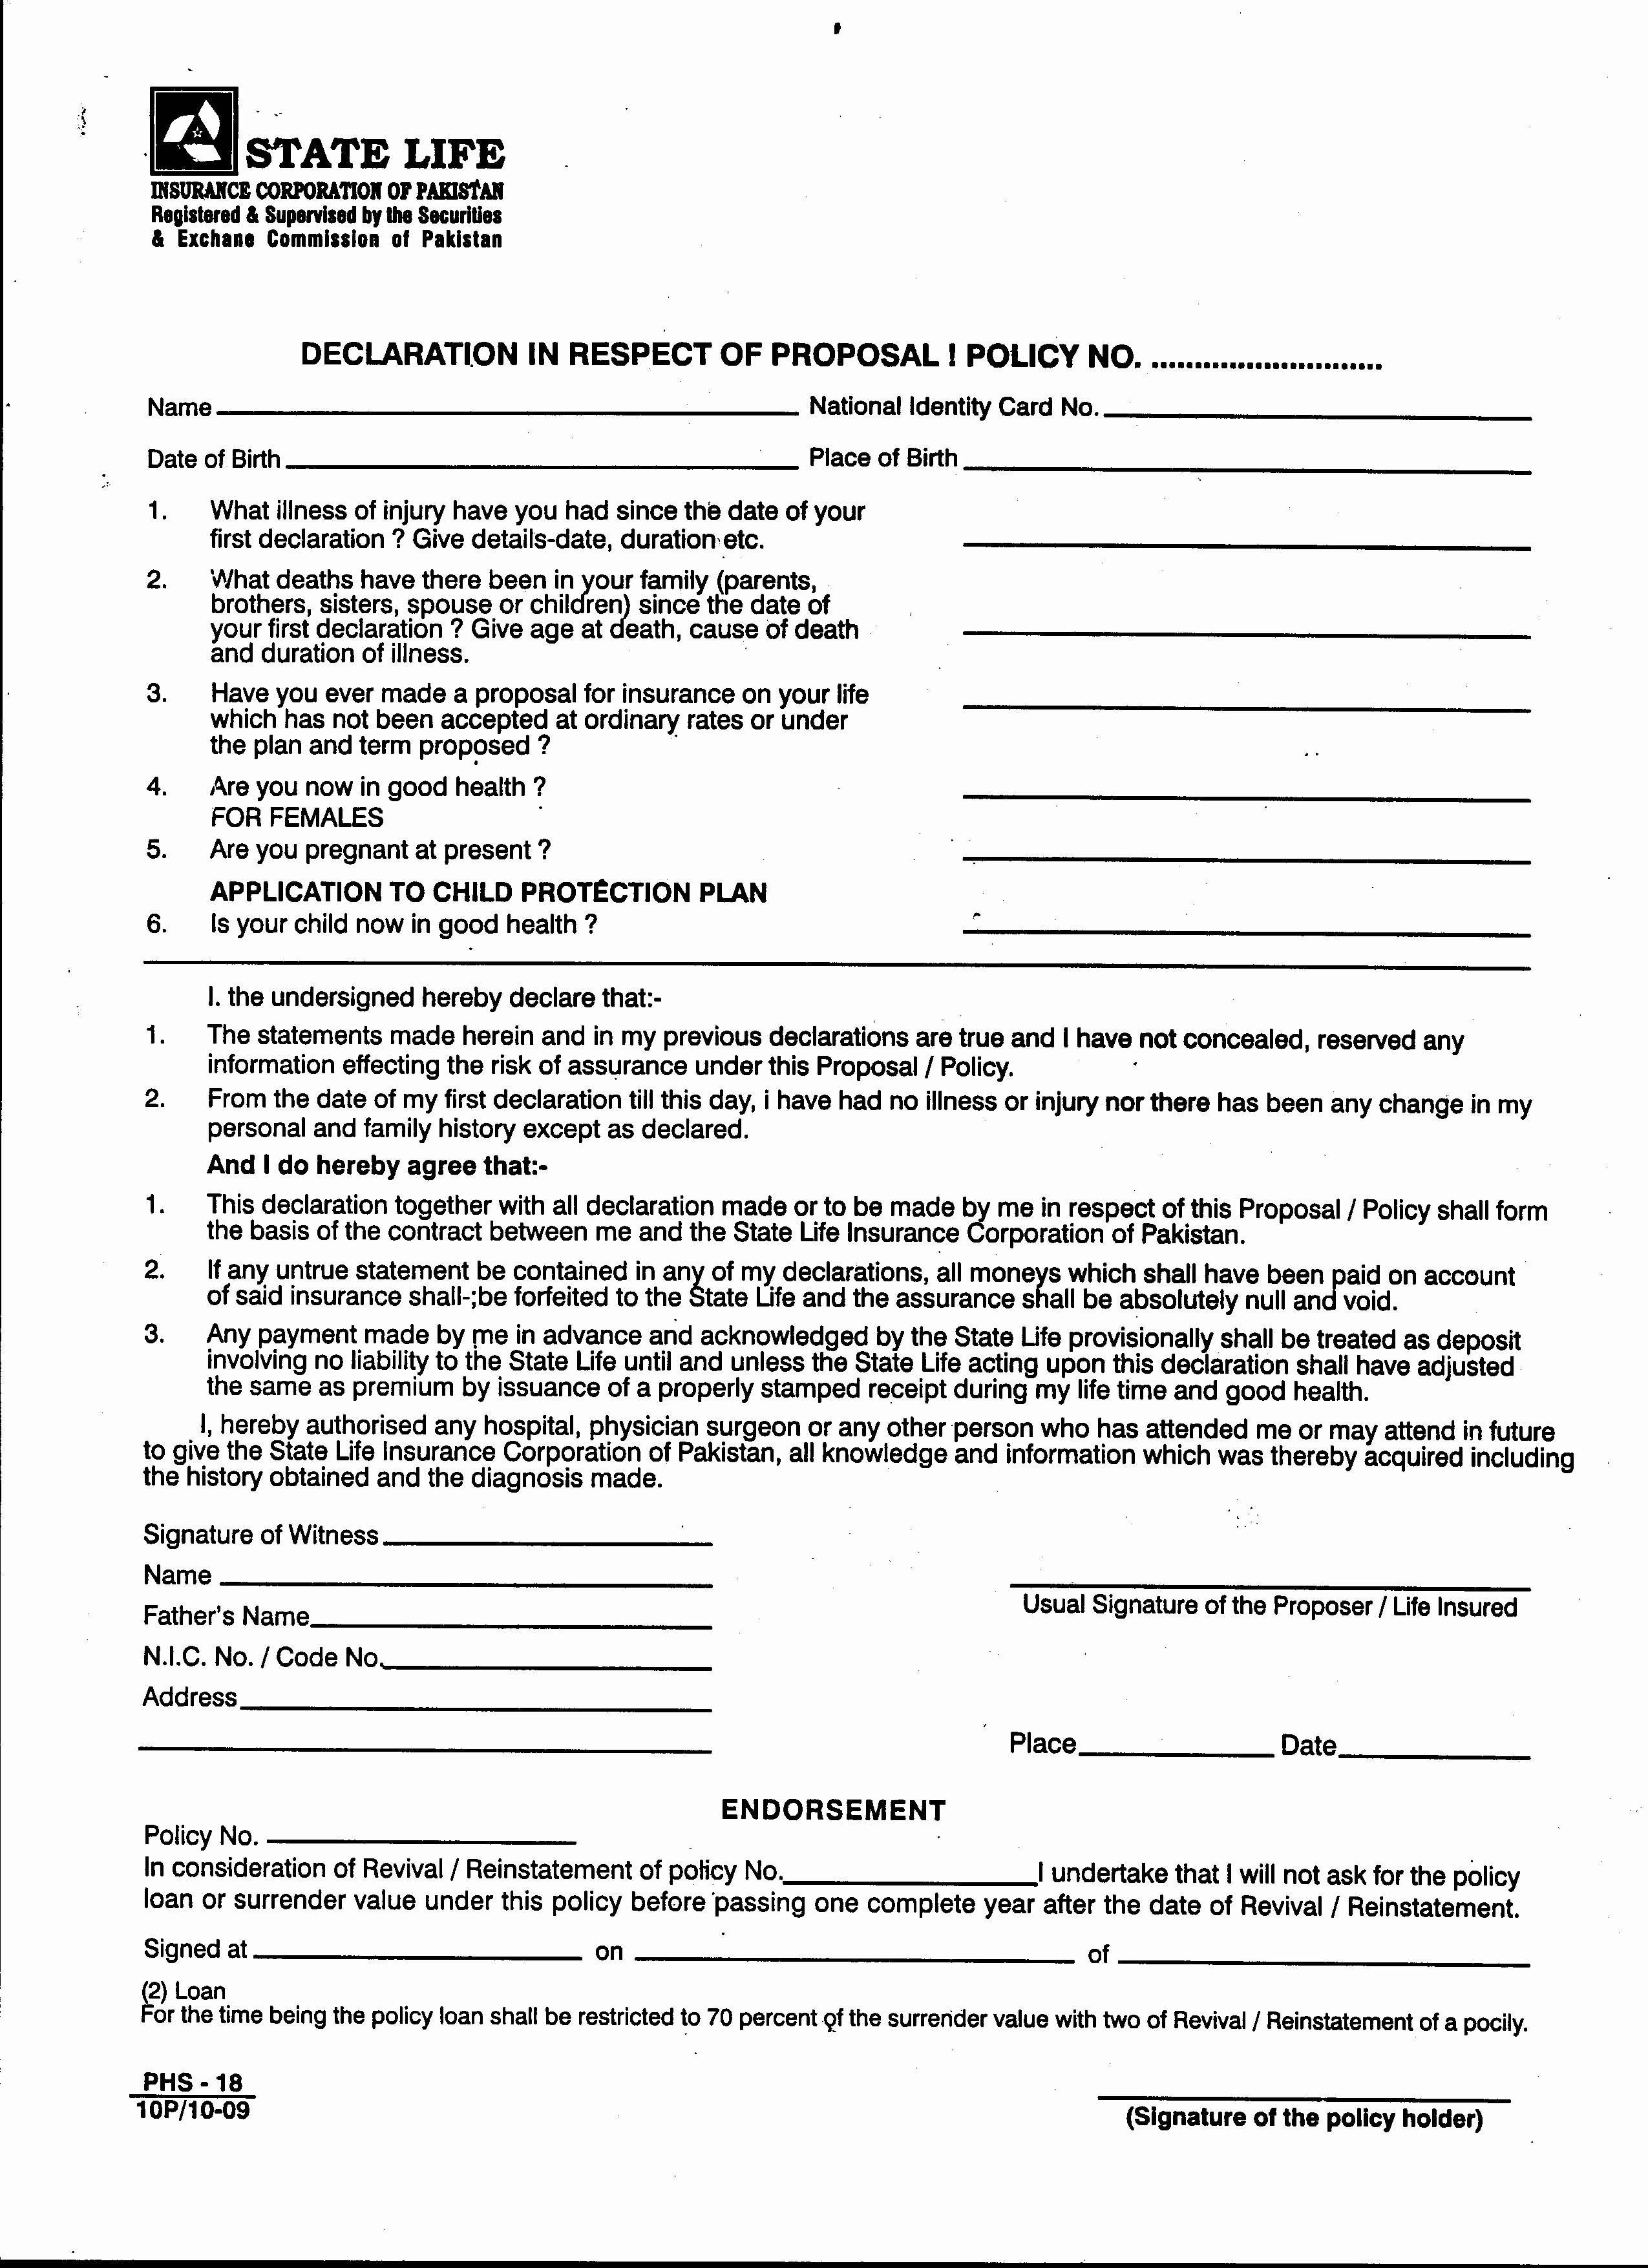 Progressive Auto Insurance Declaration Page Unique Car Document Declarations